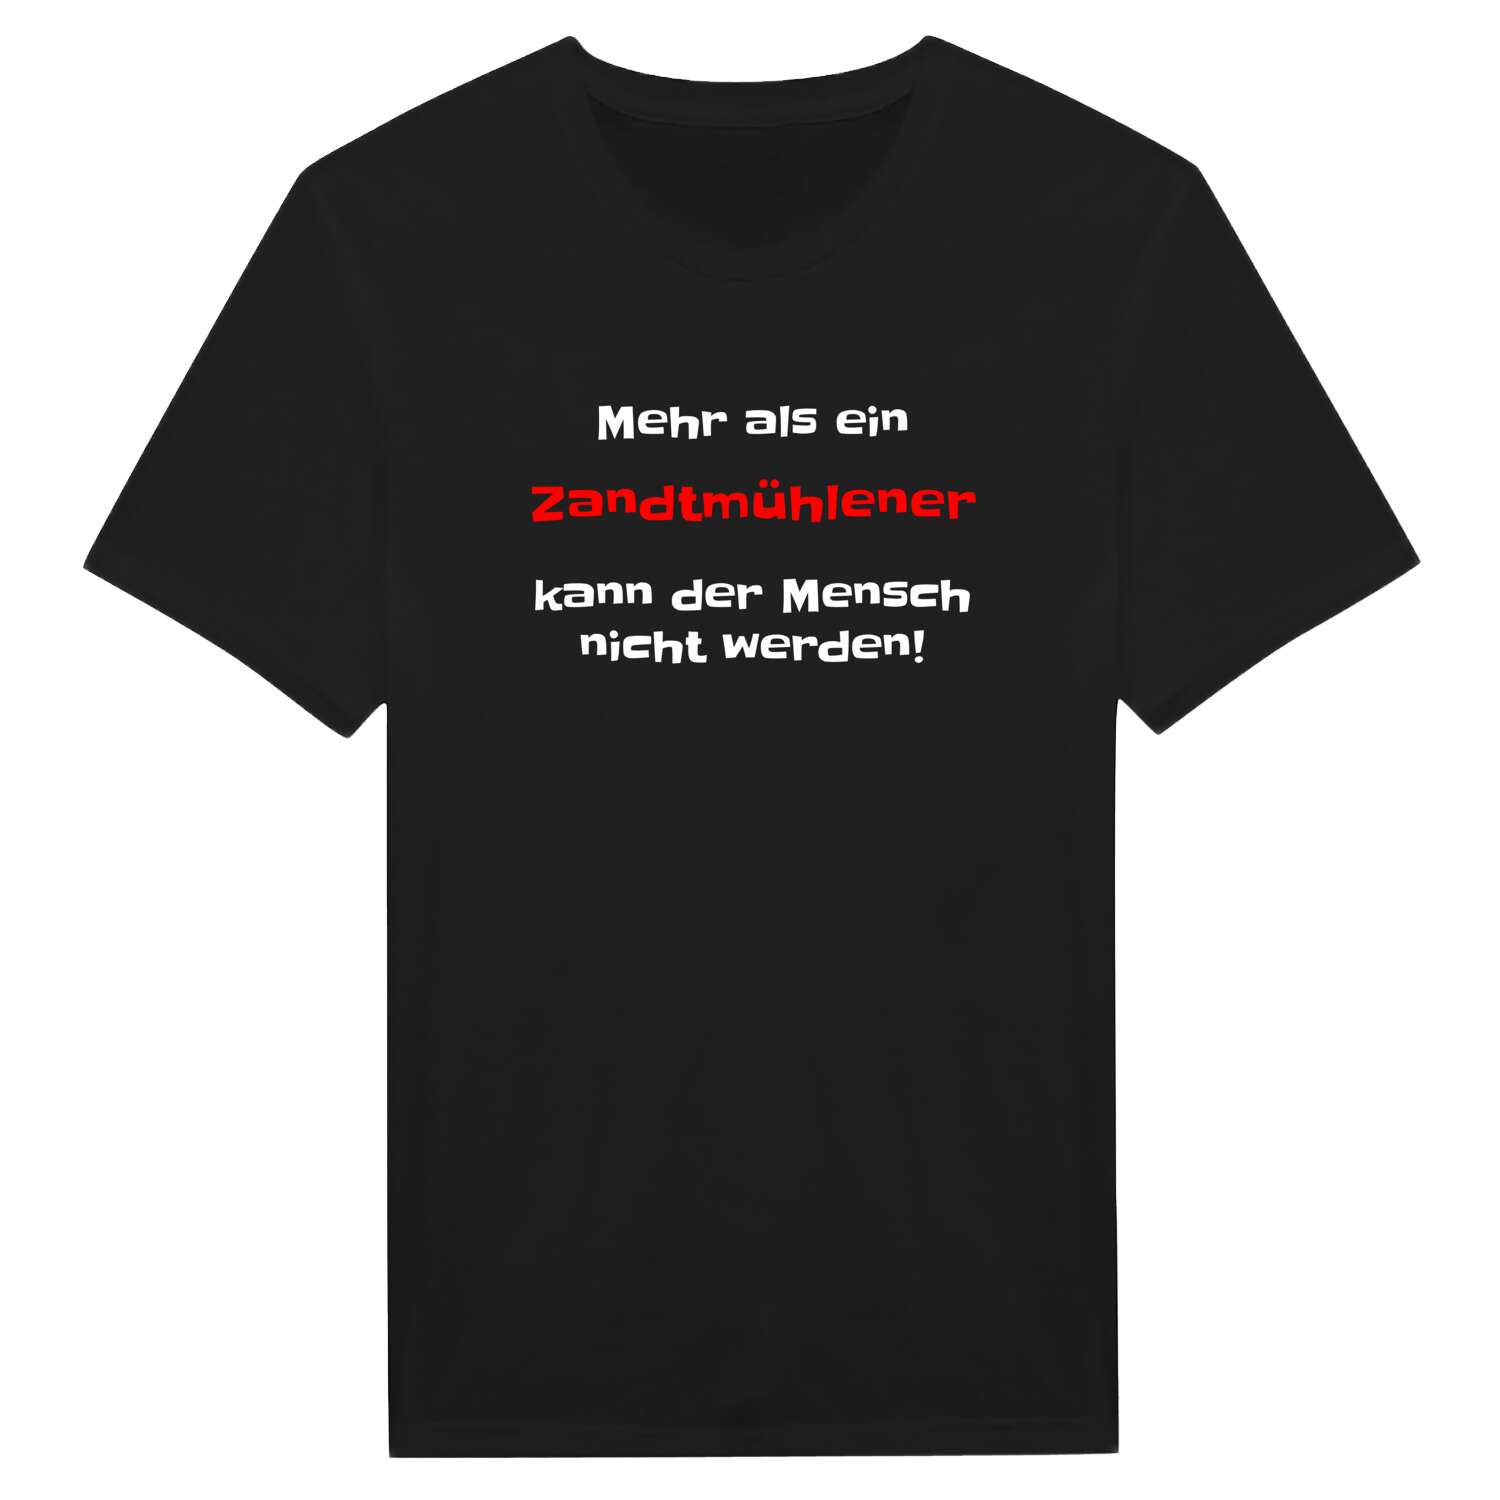 Zandtmühle T-Shirt »Mehr als ein«